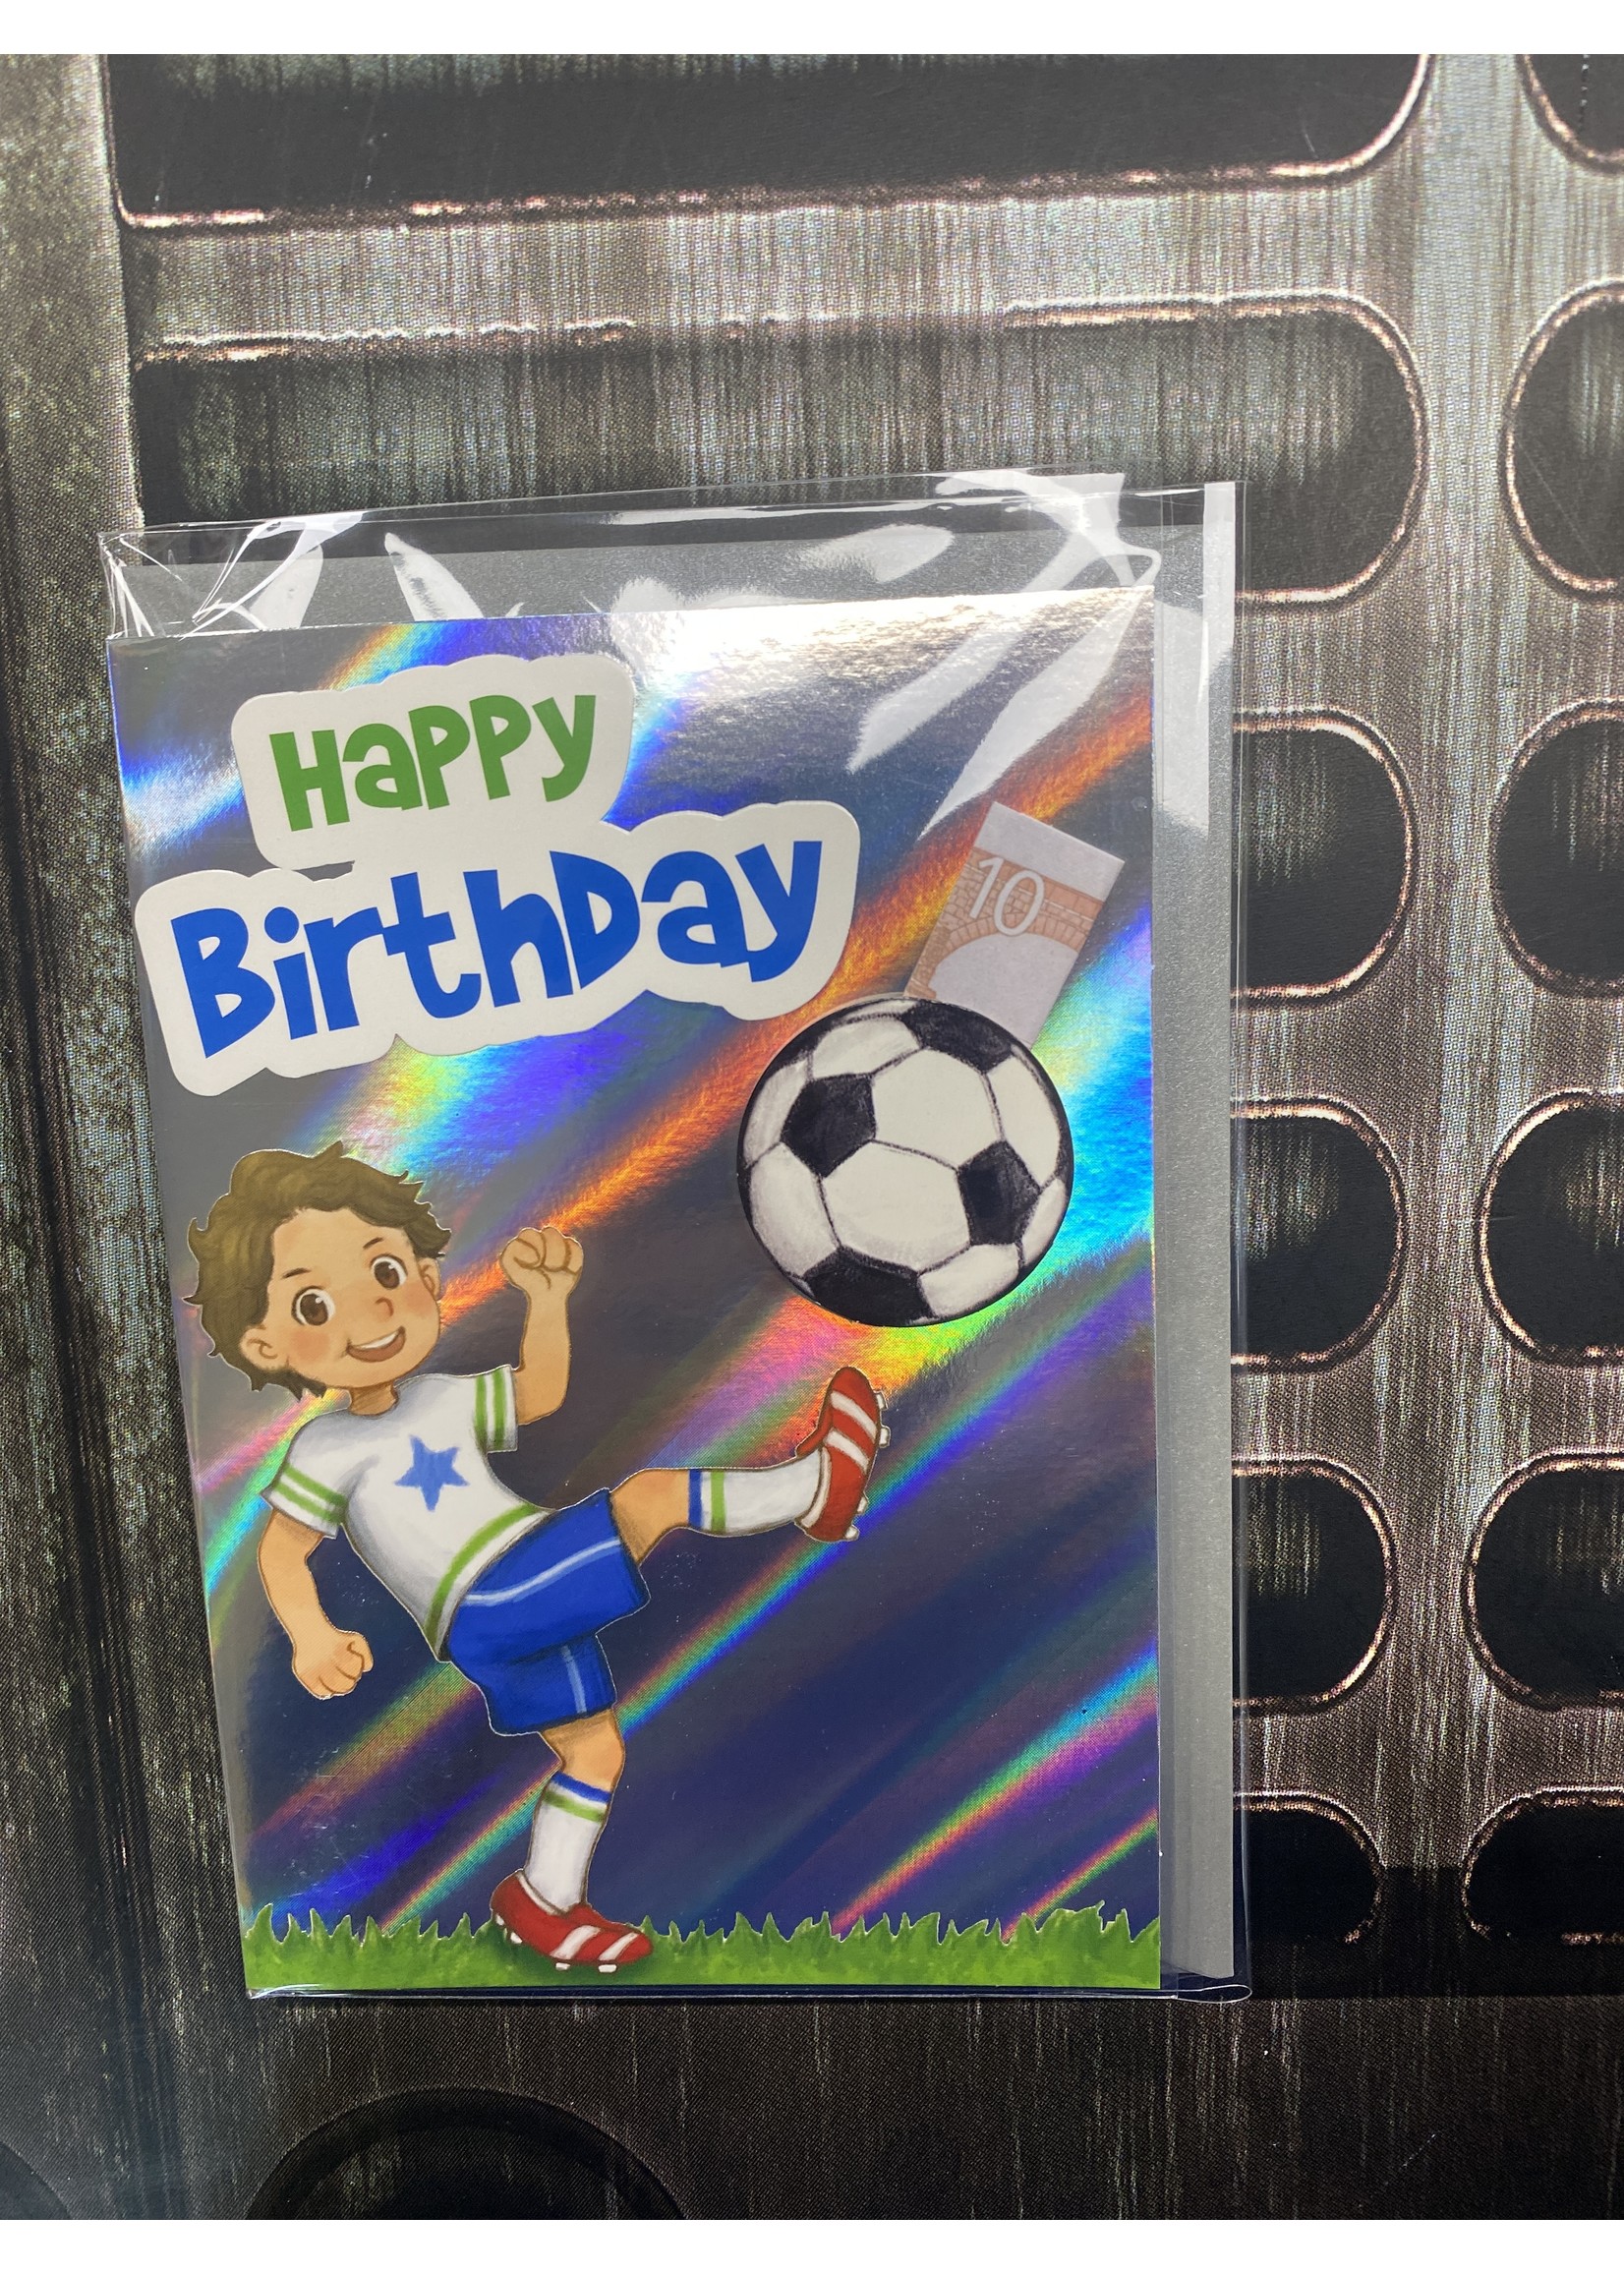 Depesche Verjaardagskaart Voetbal